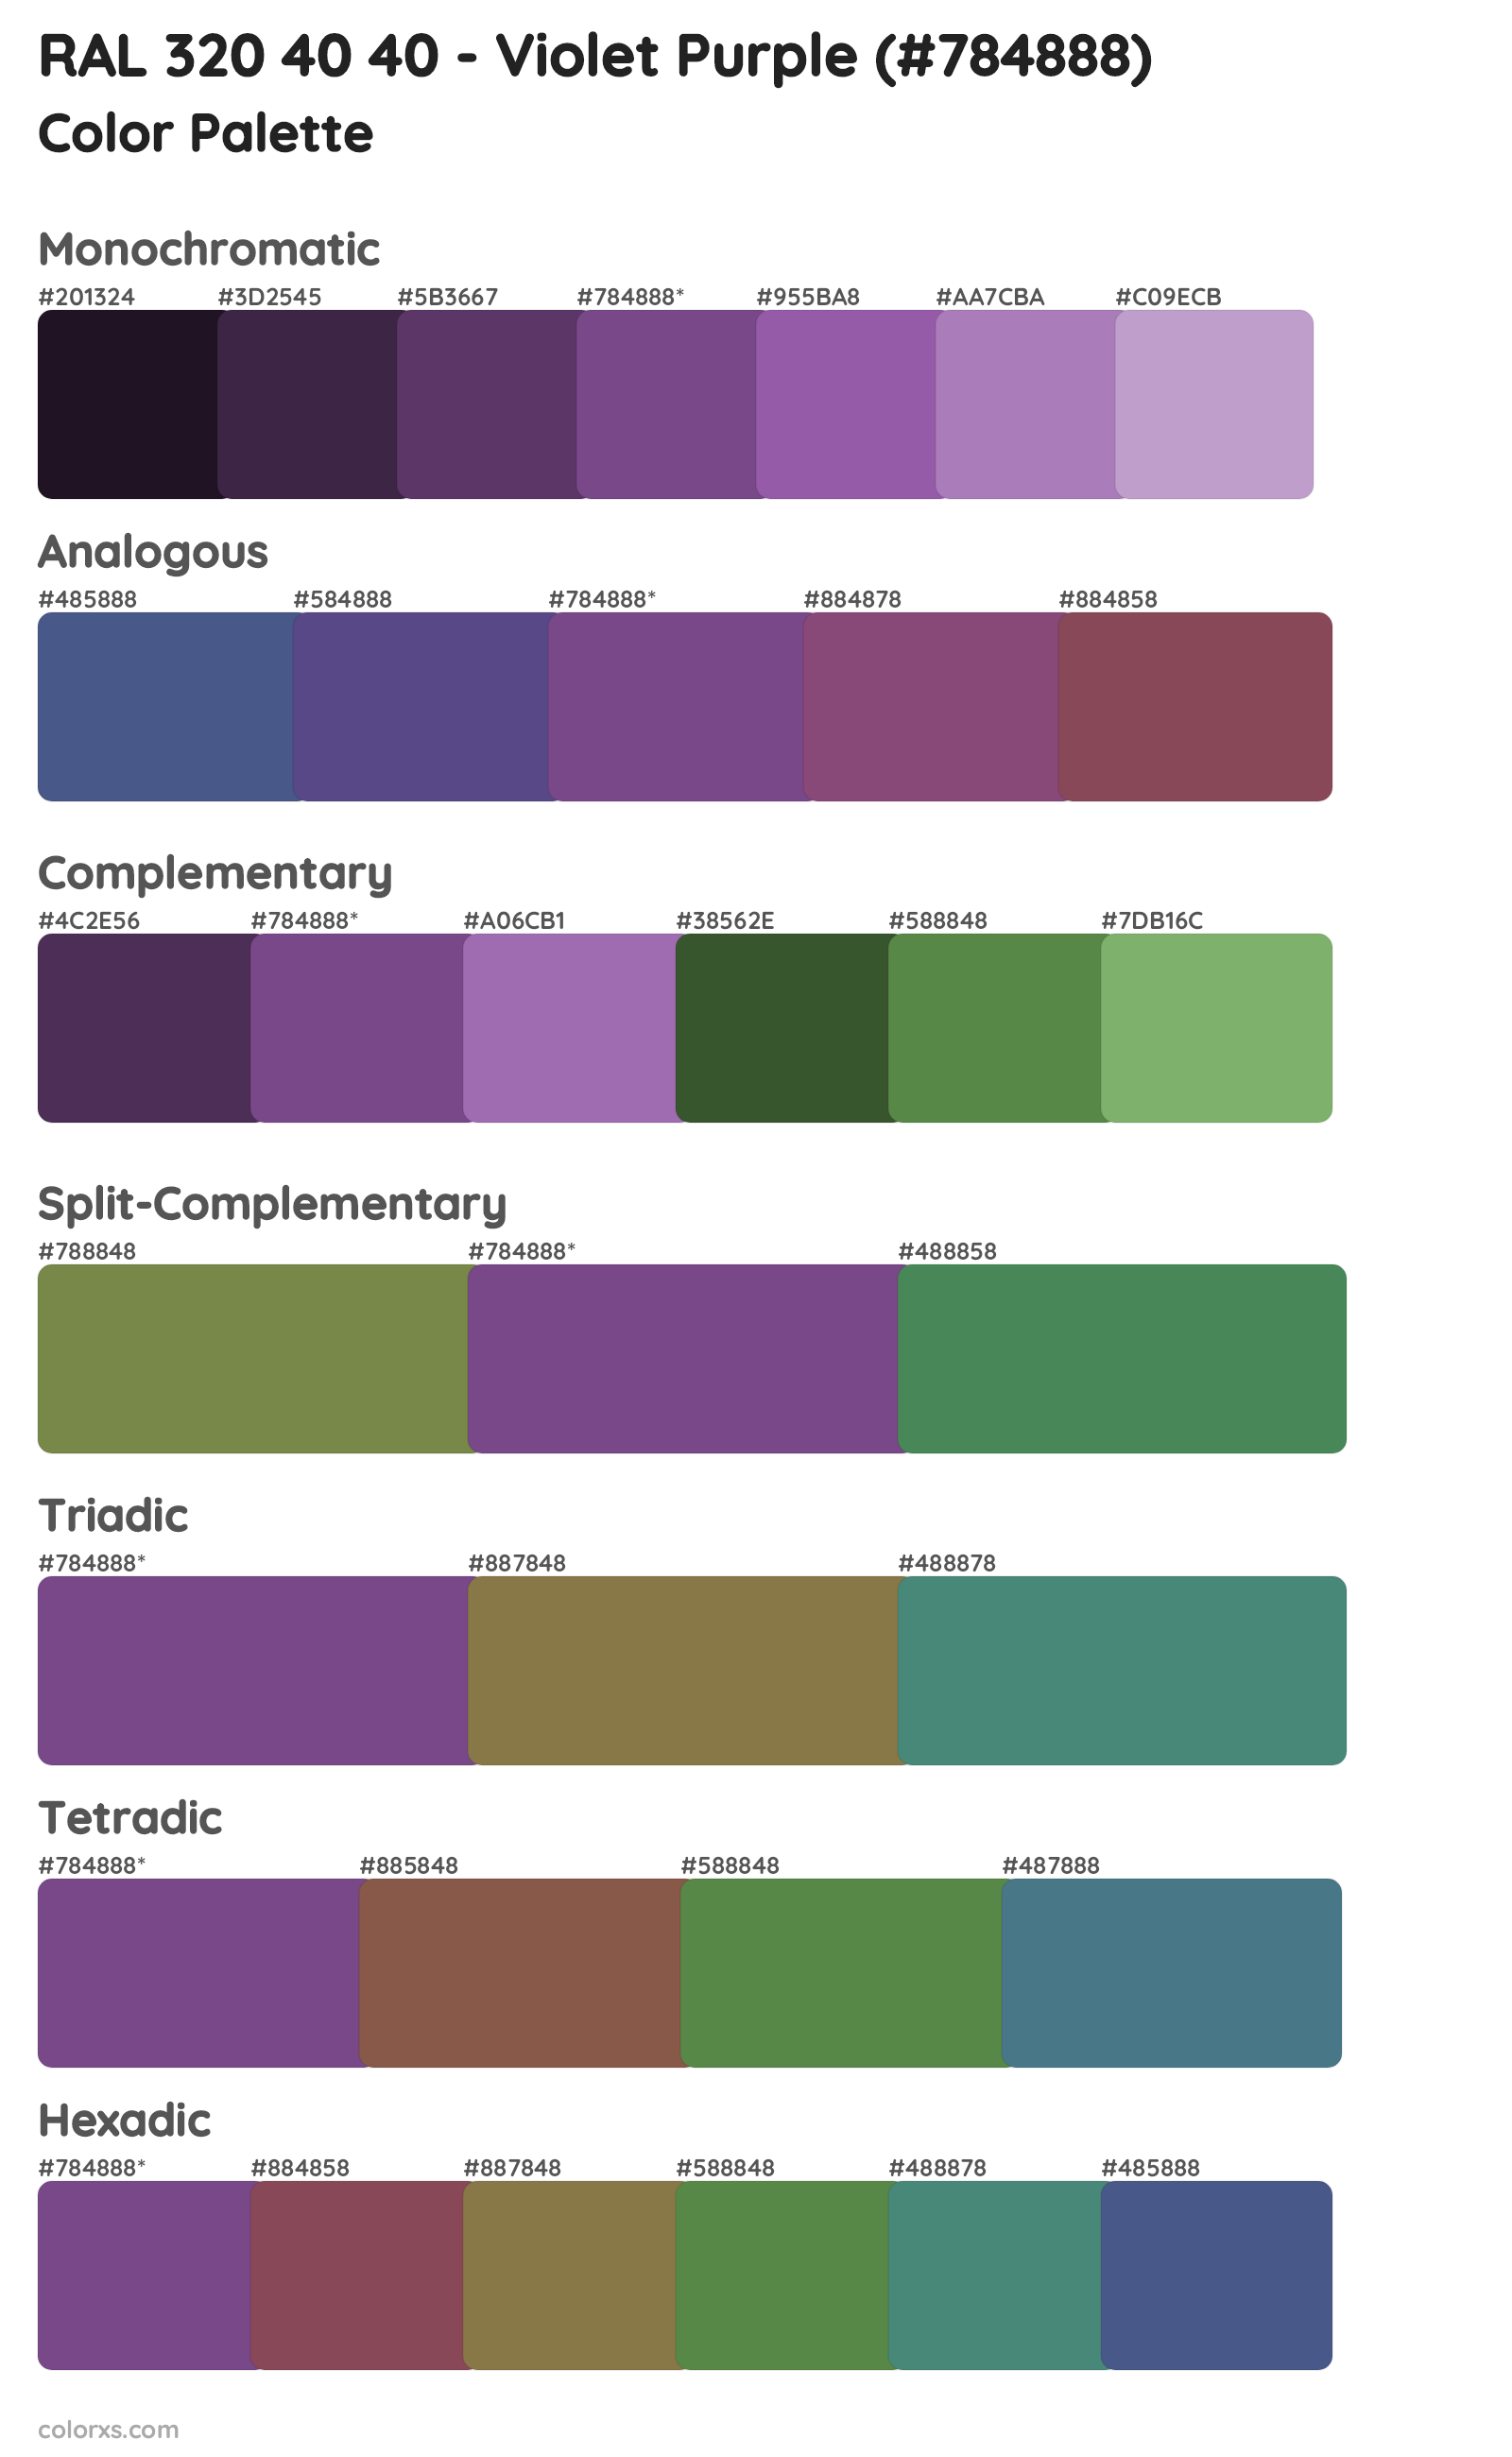 RAL 320 40 40 - Violet Purple Color Scheme Palettes